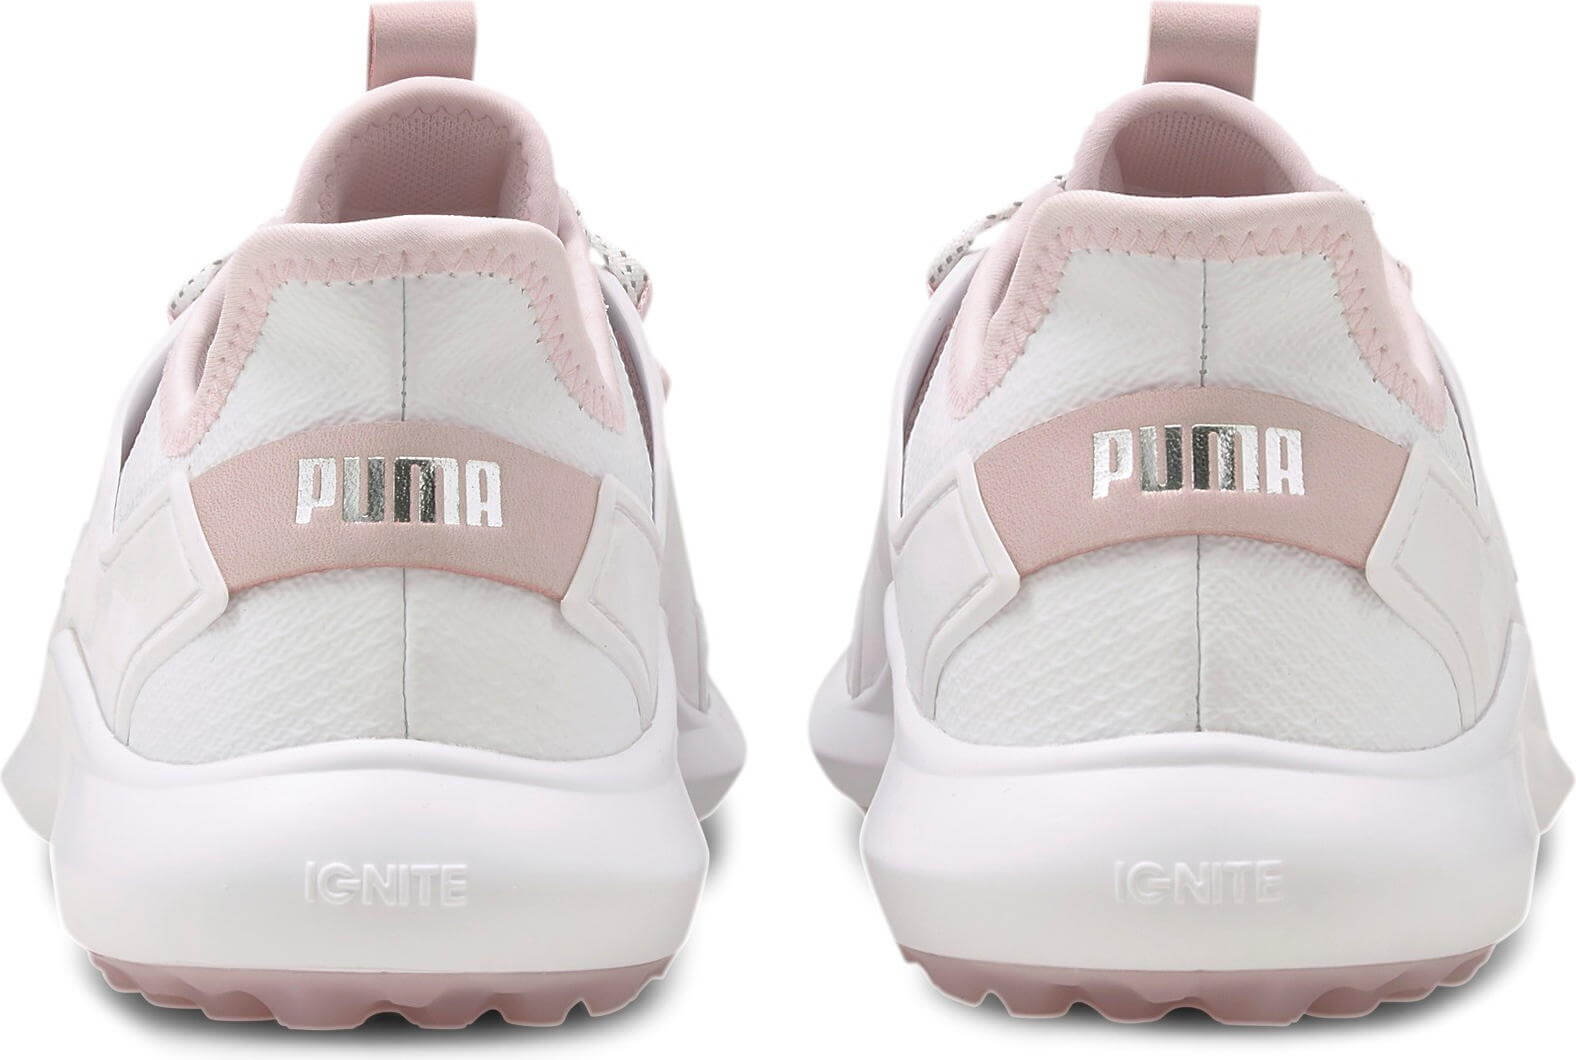 Puma Ignite Fasten8 Golfschuh, white/silver/pink